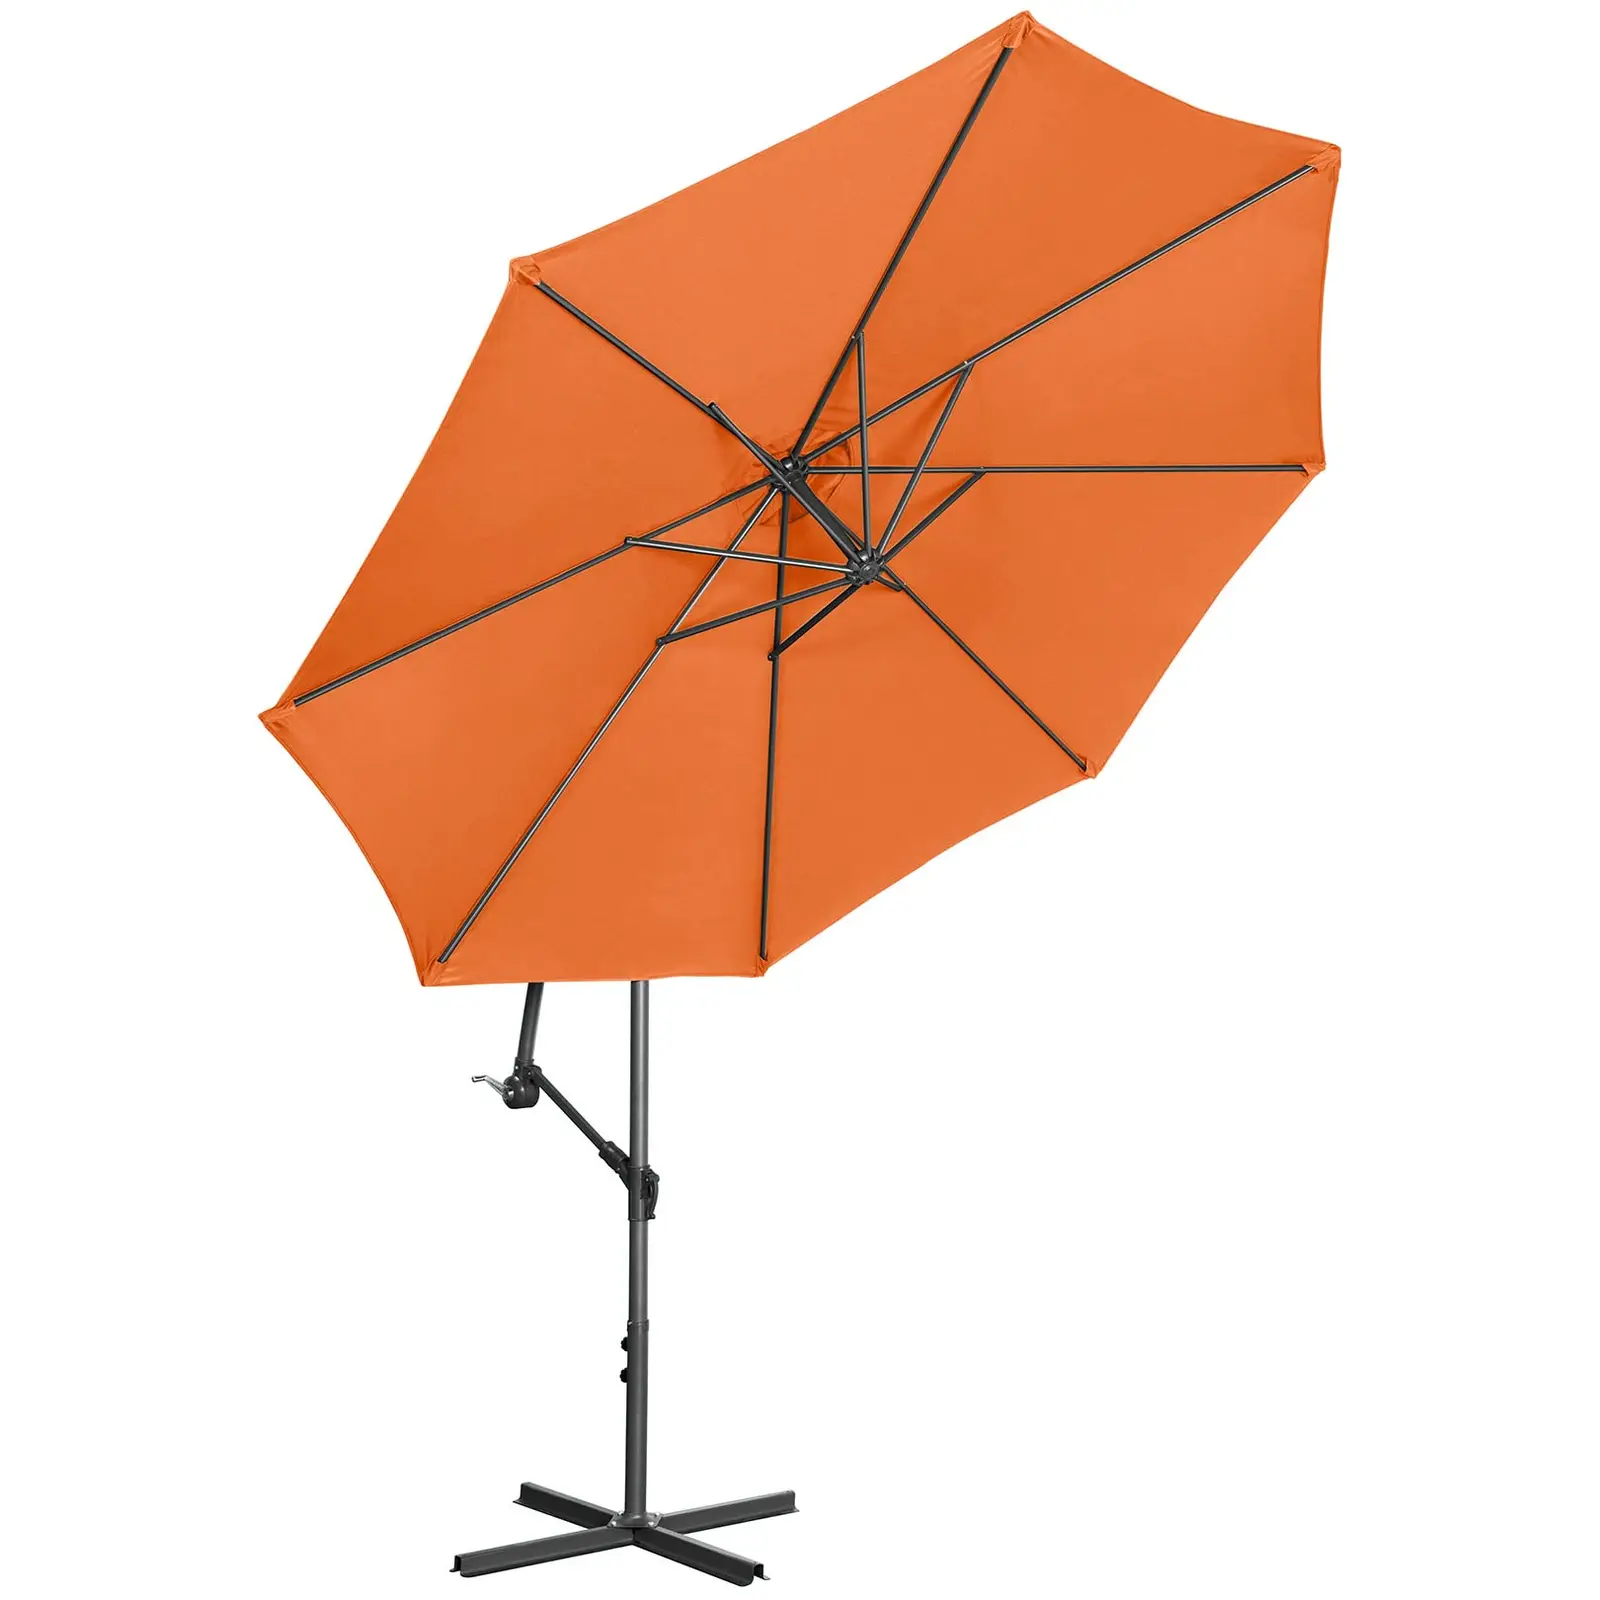 Brugt Hængeparasol - orange - rund - 300 cm i diameter